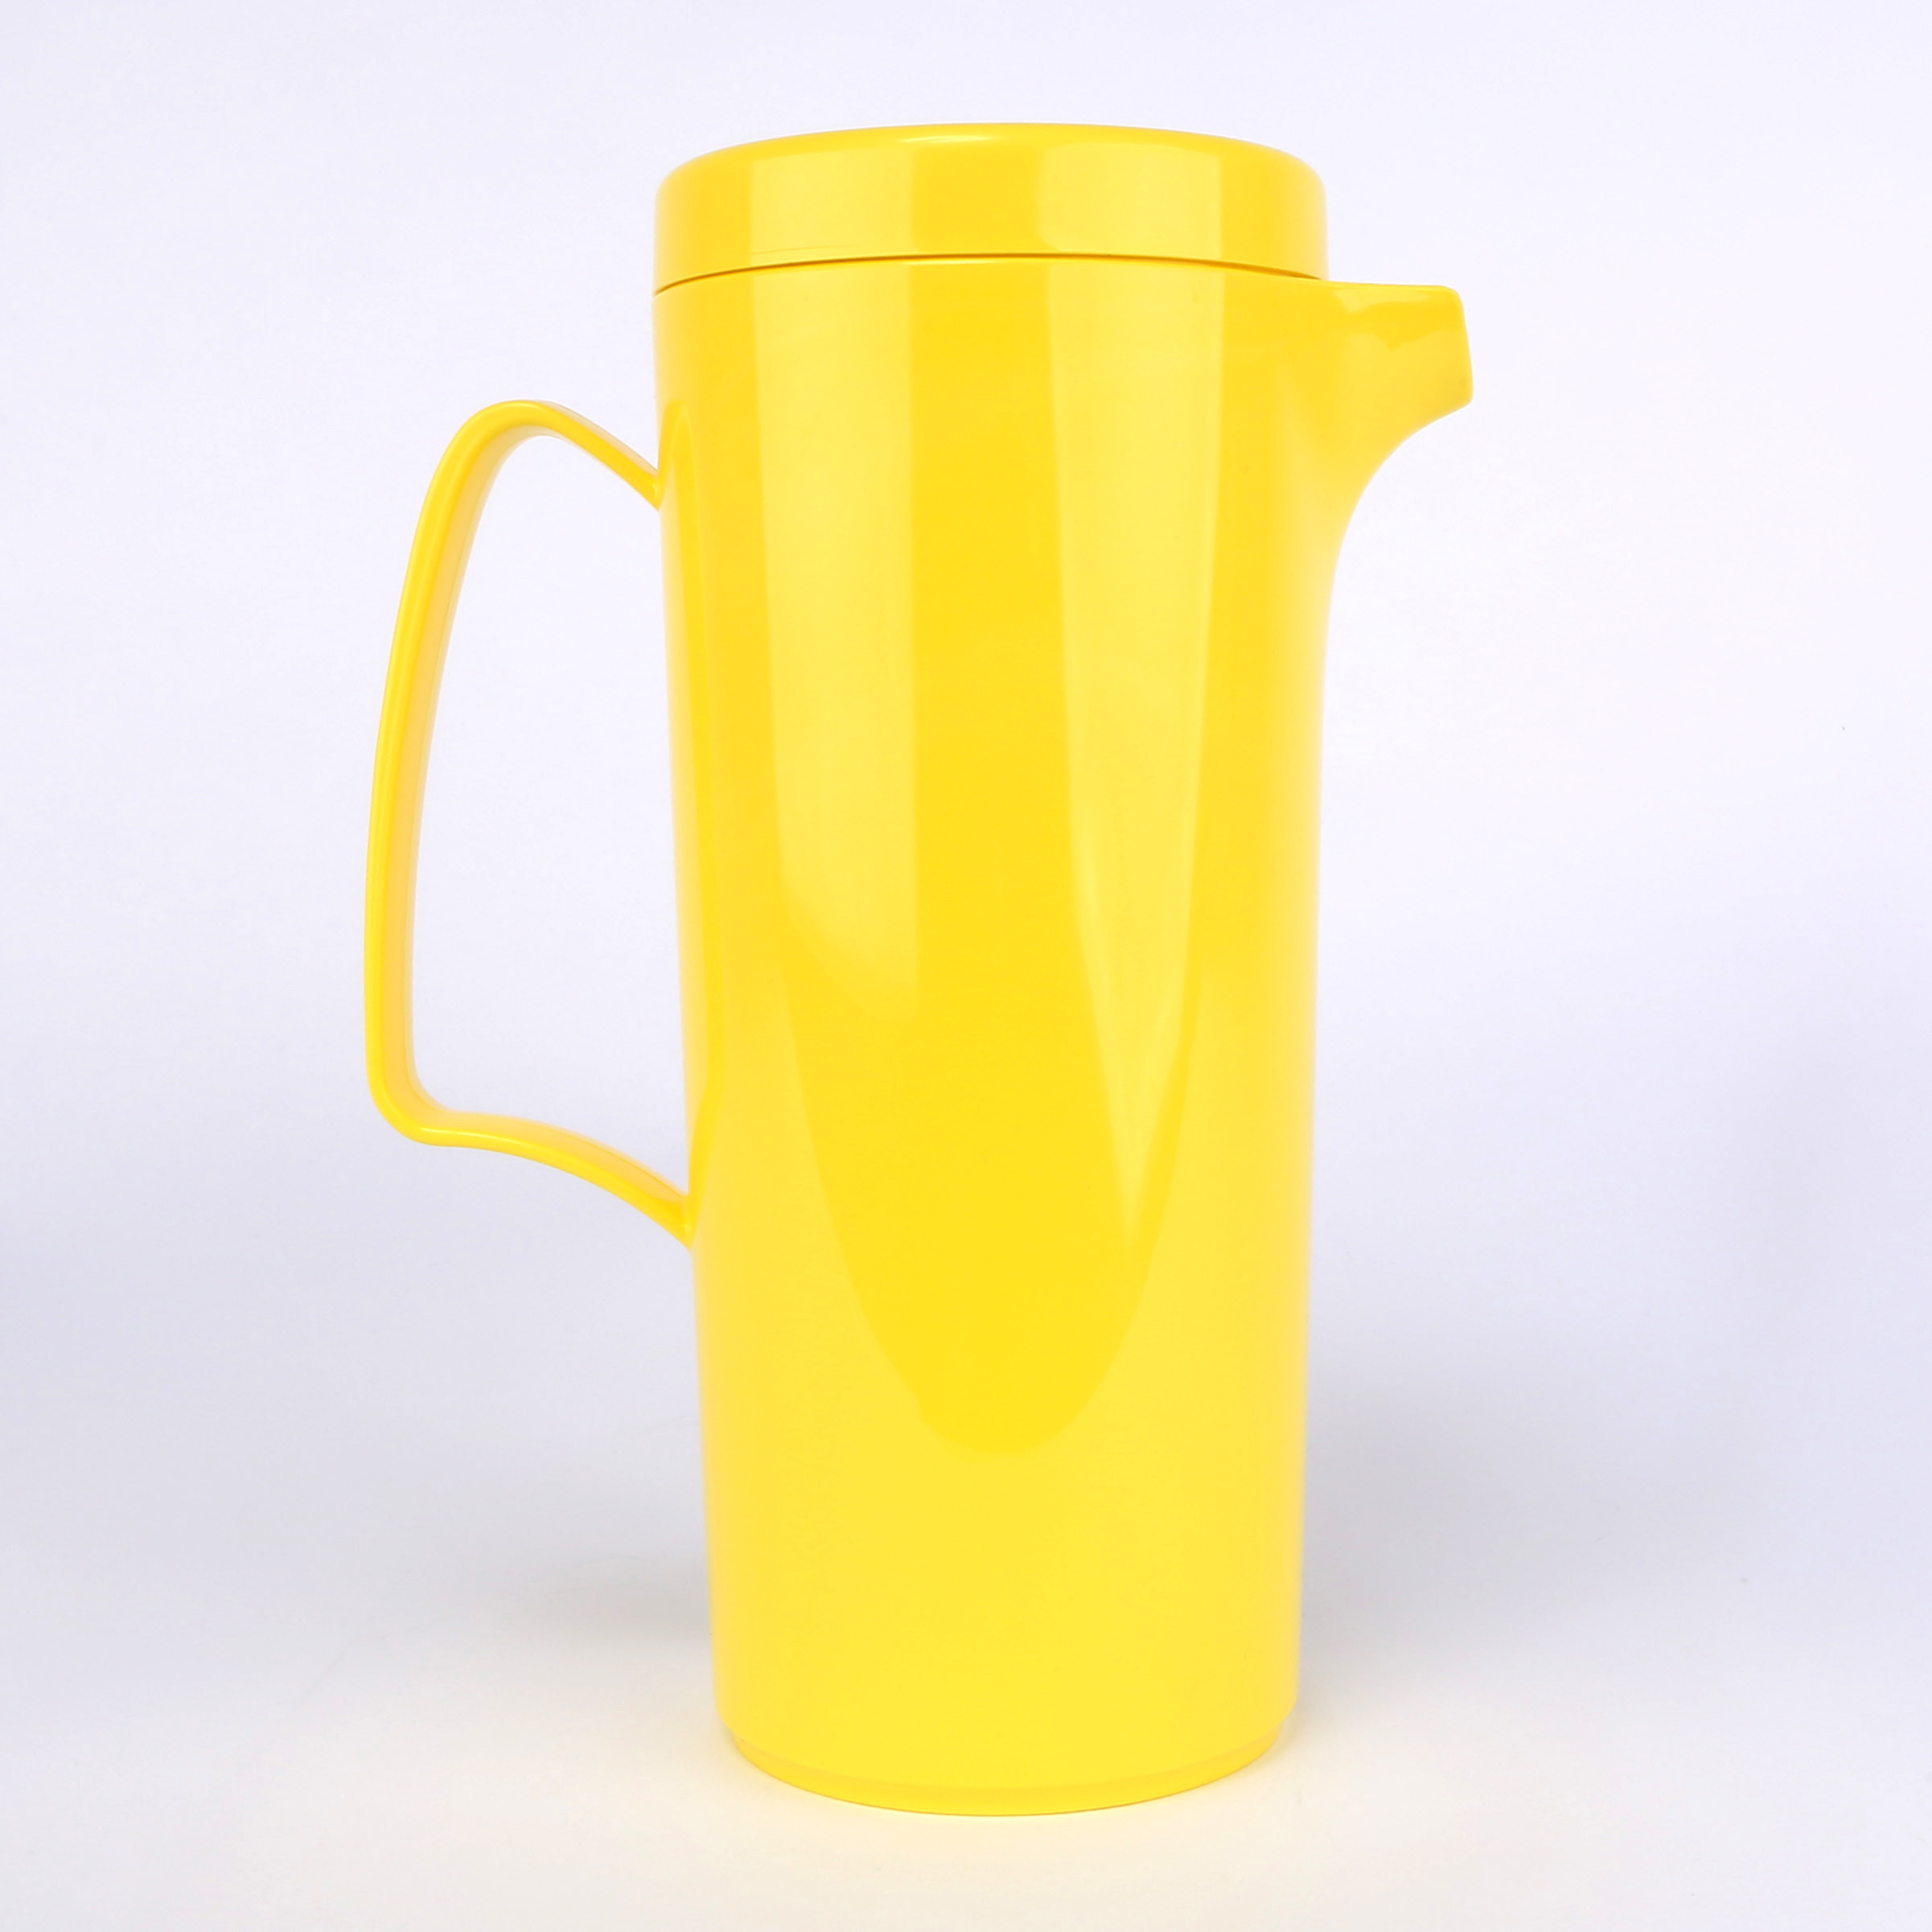 vaLon Zephyr Kanne 1 L mit Deckel aus Kunststoff in der Farbe gelb, schadstoffrei